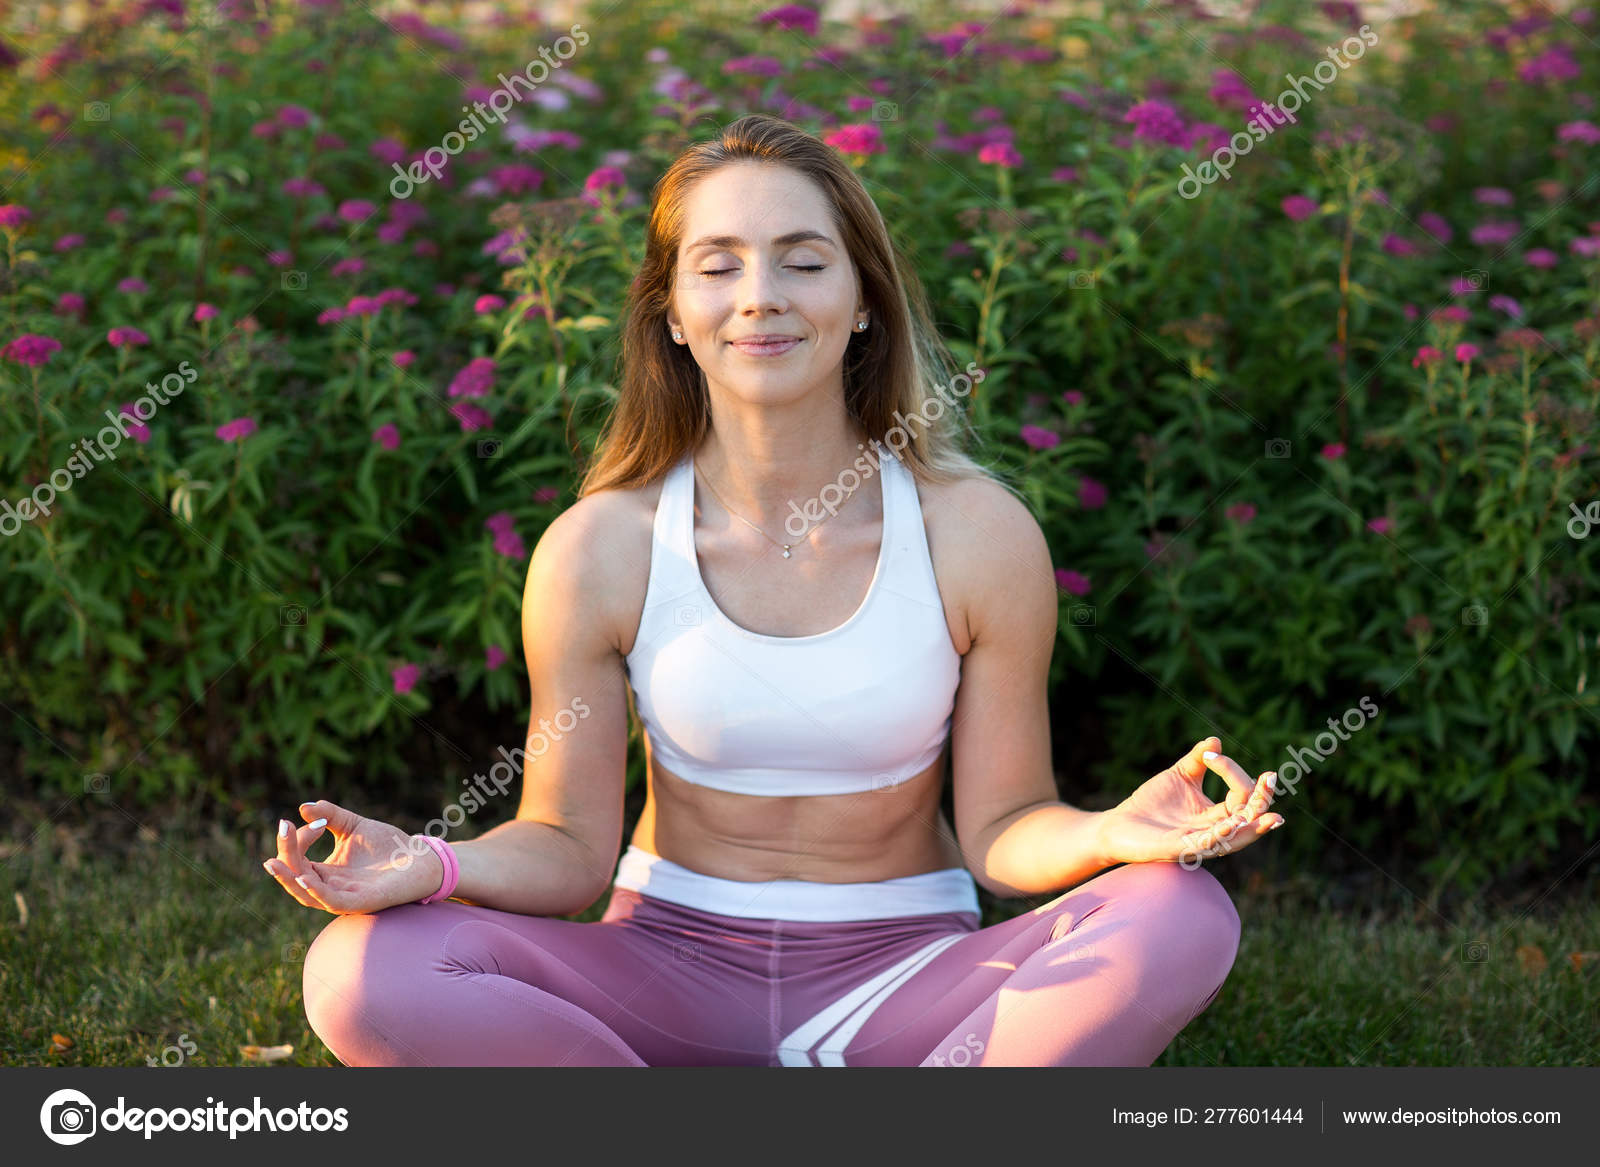 siga adelante Animado Moler Mujer Joven Ropa Deportiva Contra Las Flores Haciendo Yoga Meditando:  fotografía de stock © atercorv.gmail.com #277601444 | Depositphotos